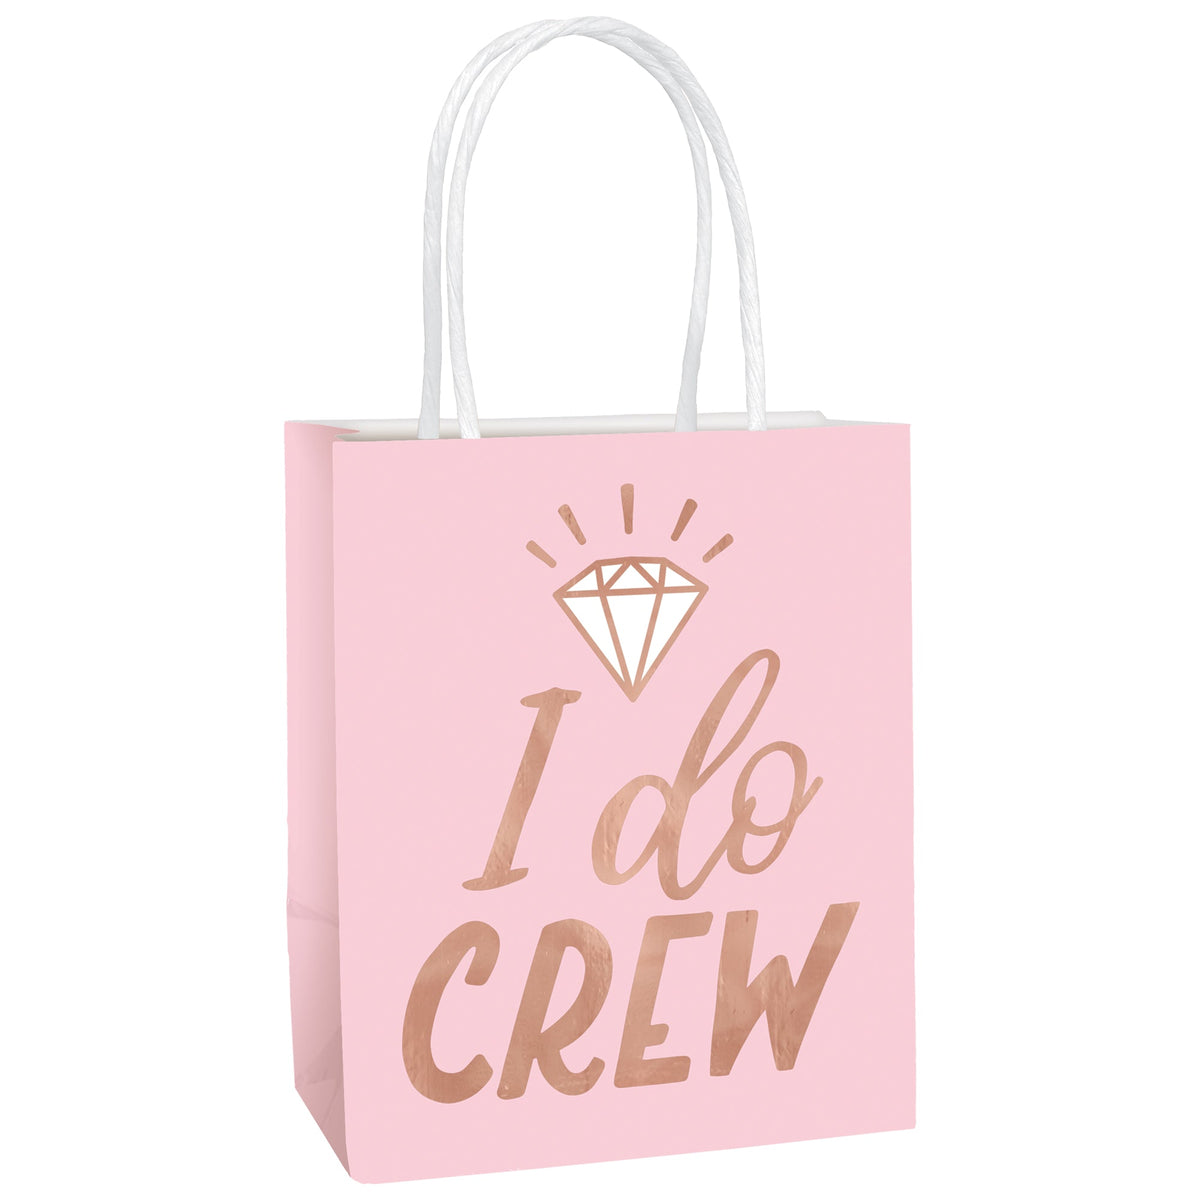 Blush Wedding Favor Bags  "I Do Crew" Hot Stamped 12 pack 5 1/2" Paper kraft bag